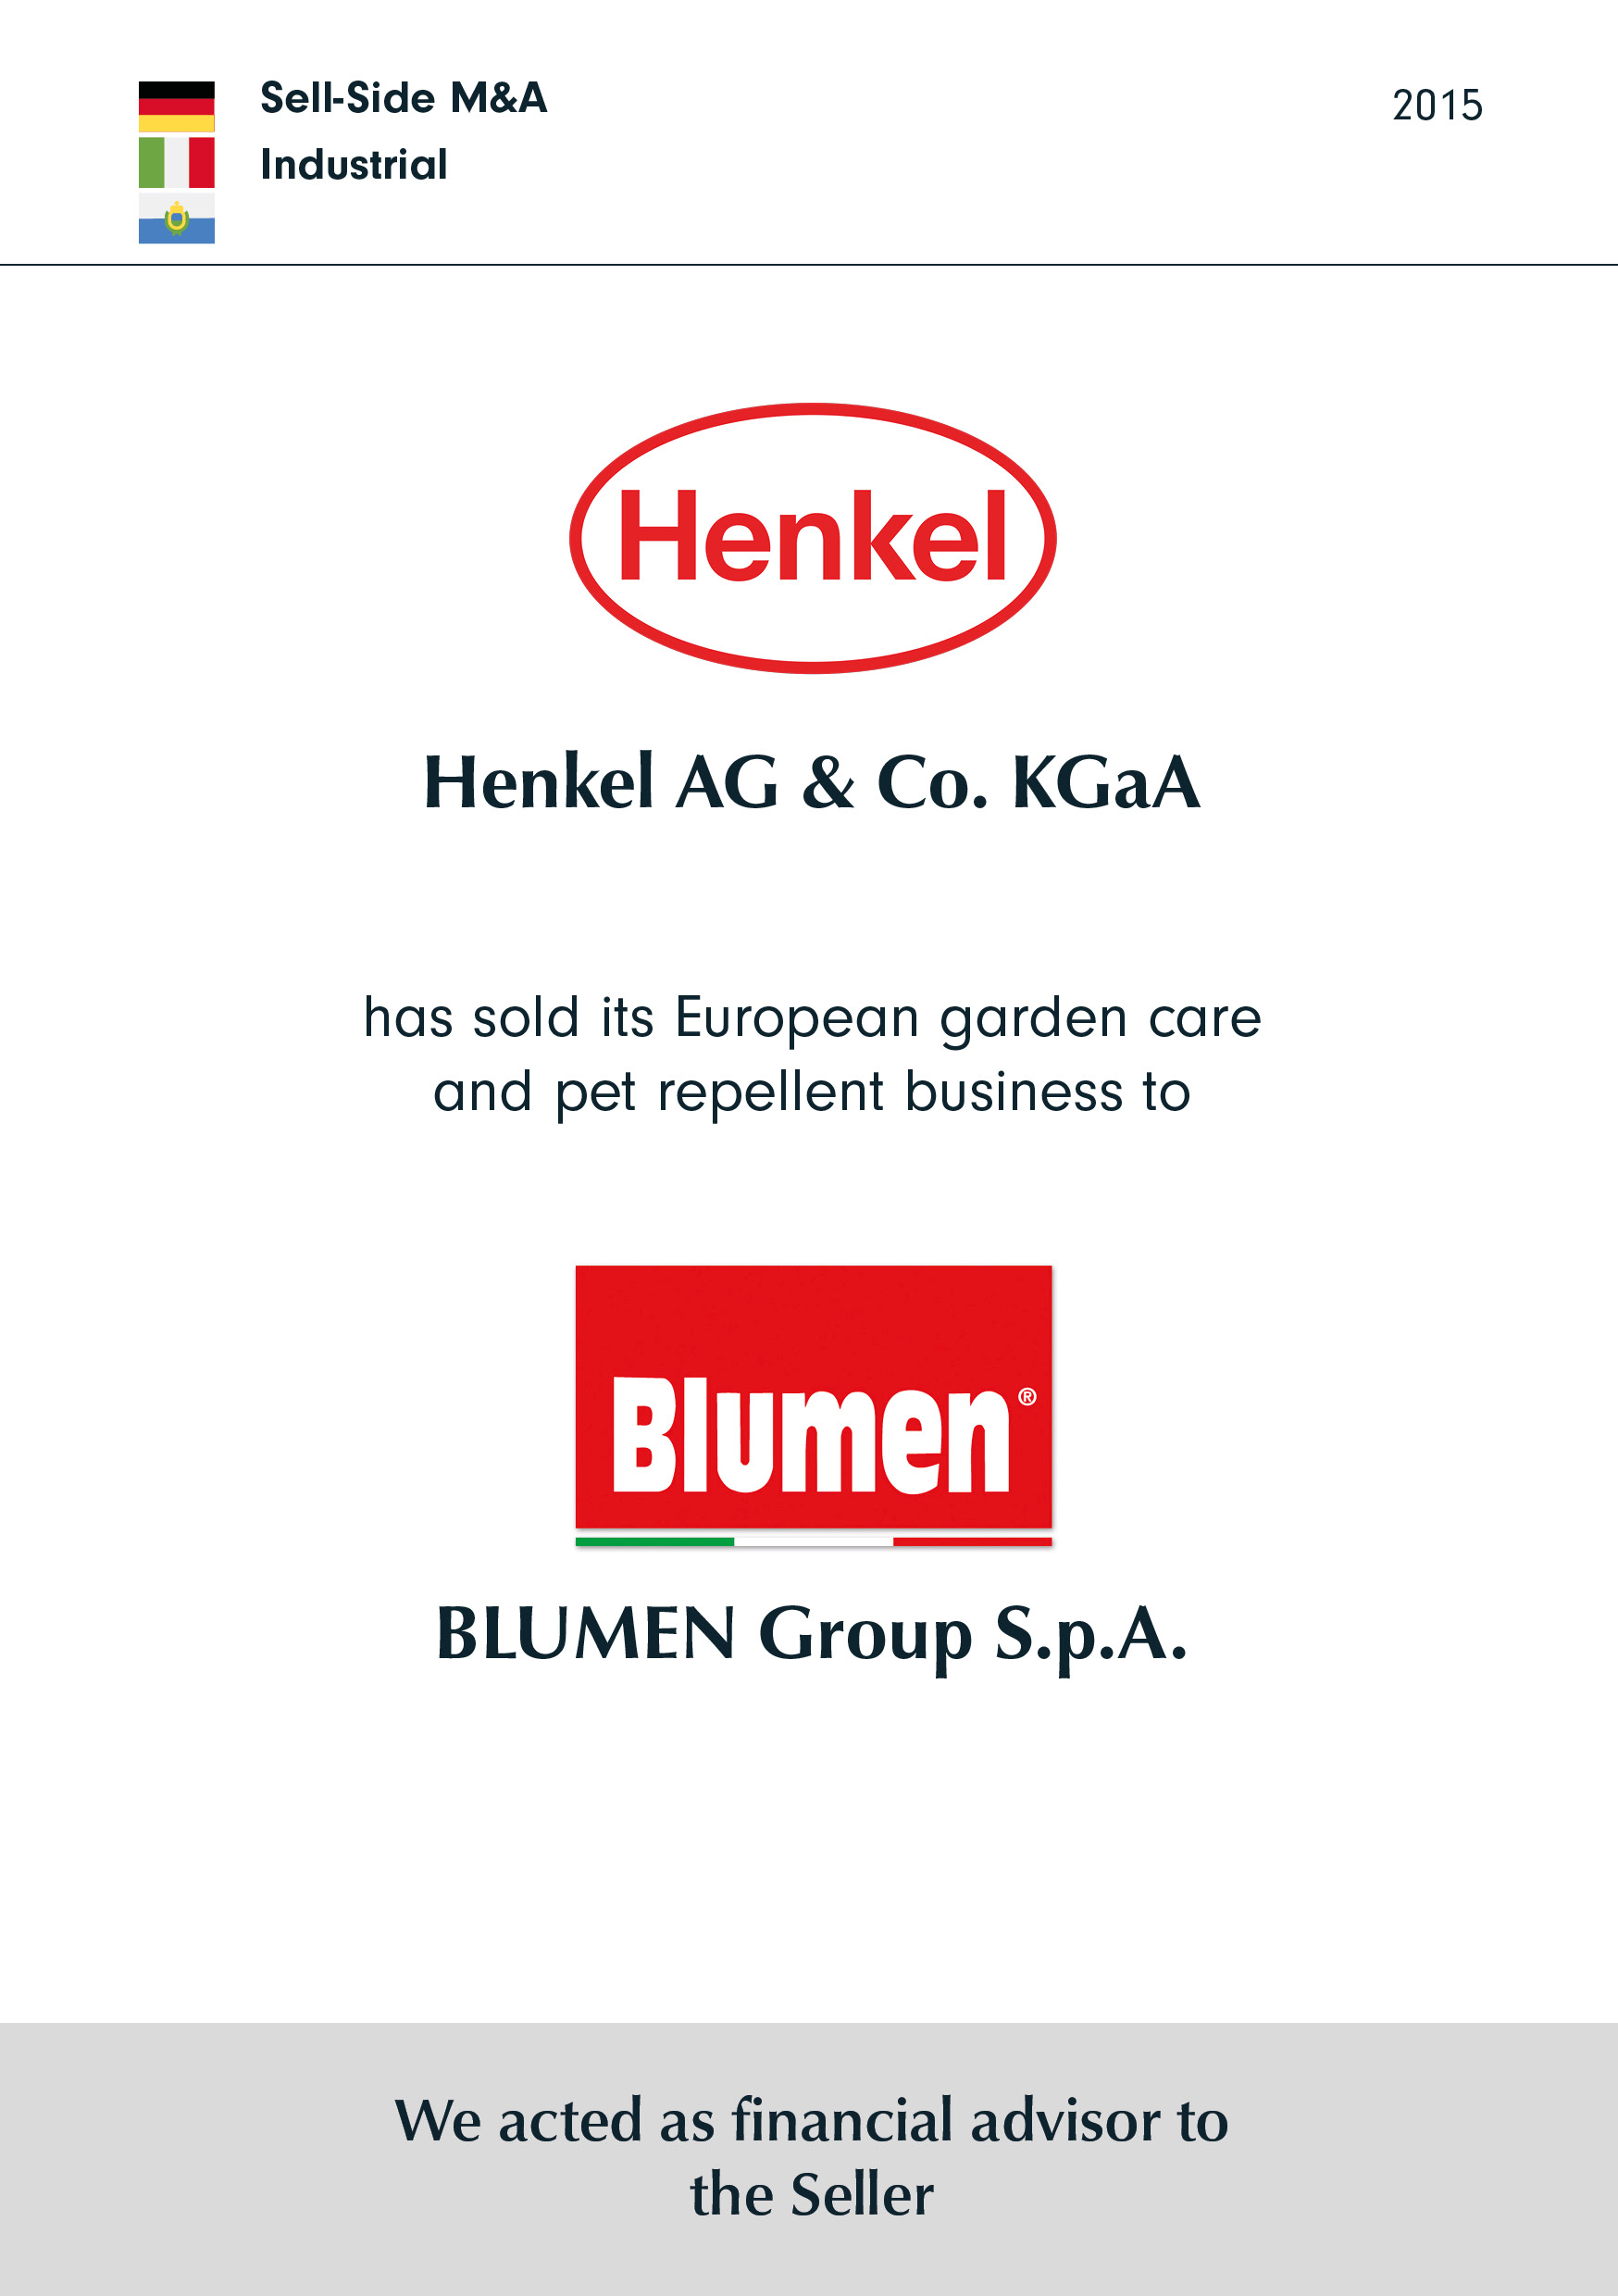 Henkel has sold its European garden care and pet repellent business to BLUMEN